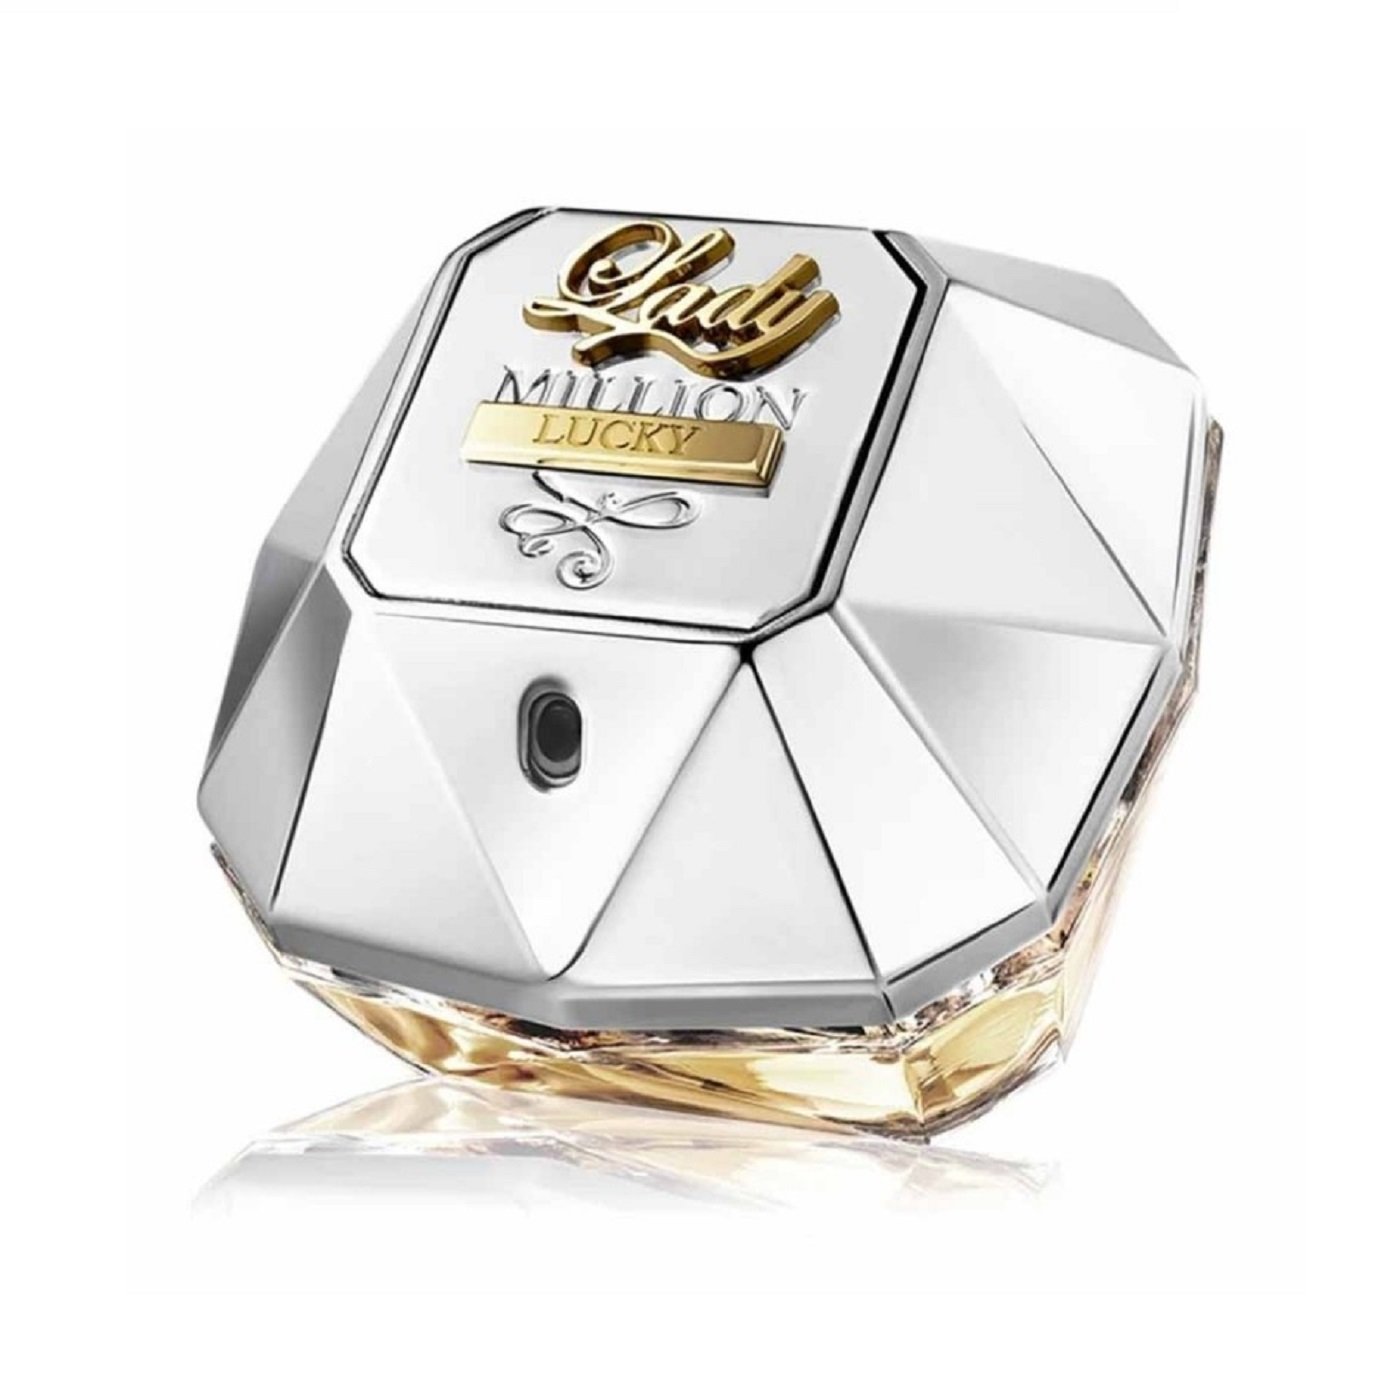 Paco Rabanne Lady Million Lucky Eau de Parfum - Eshtir.com